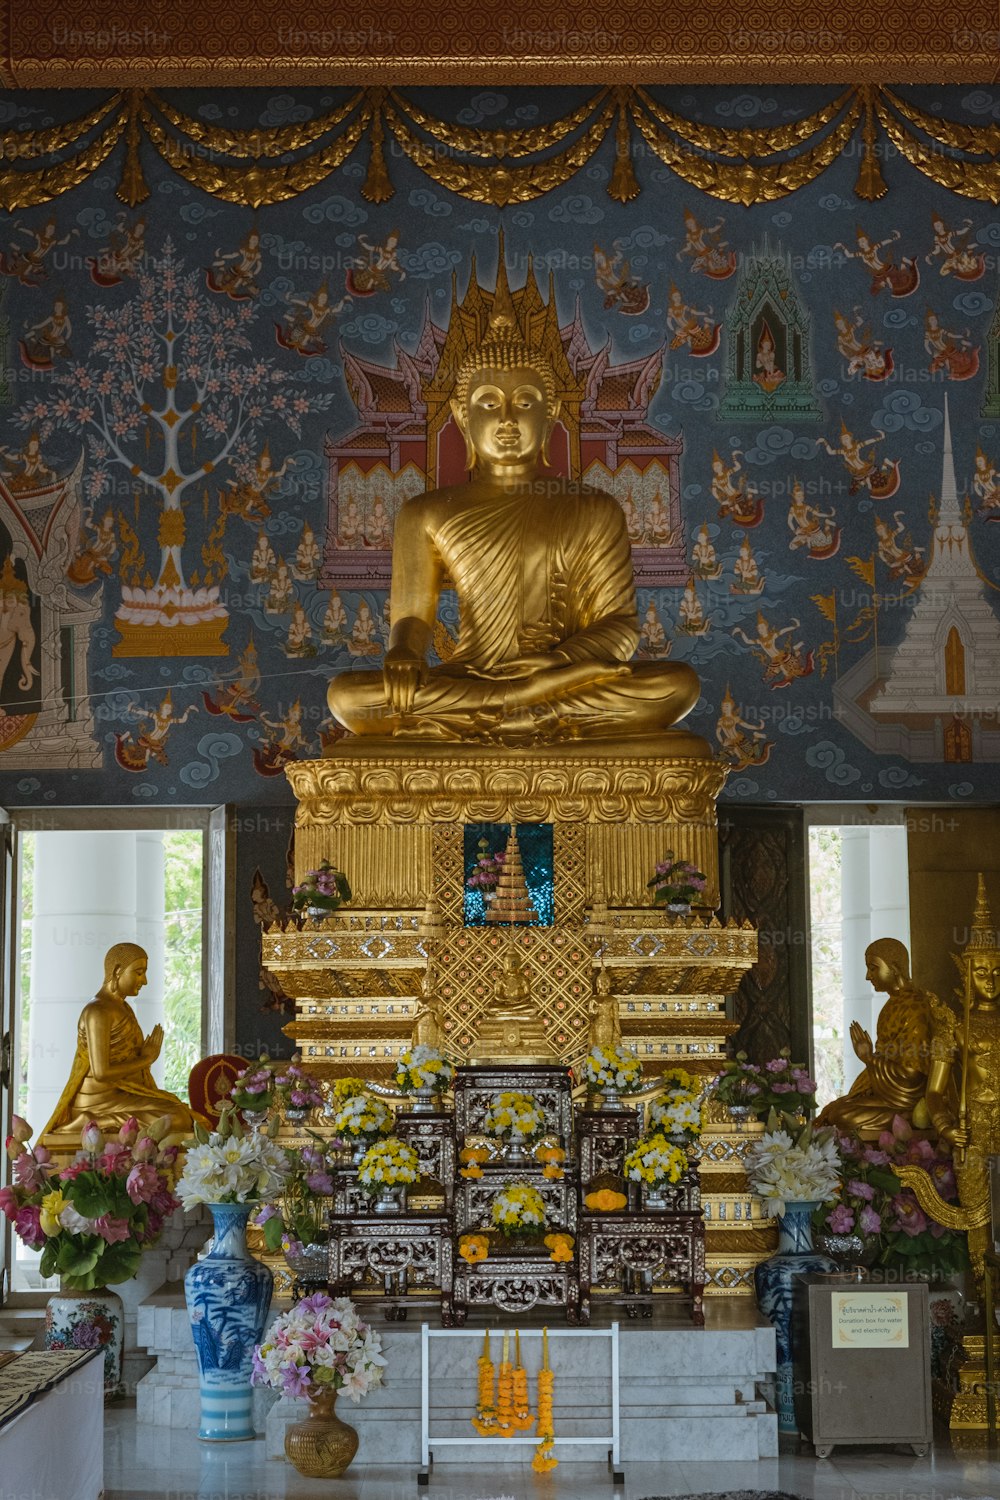 Una grande statua dorata del Buddha seduta in una stanza